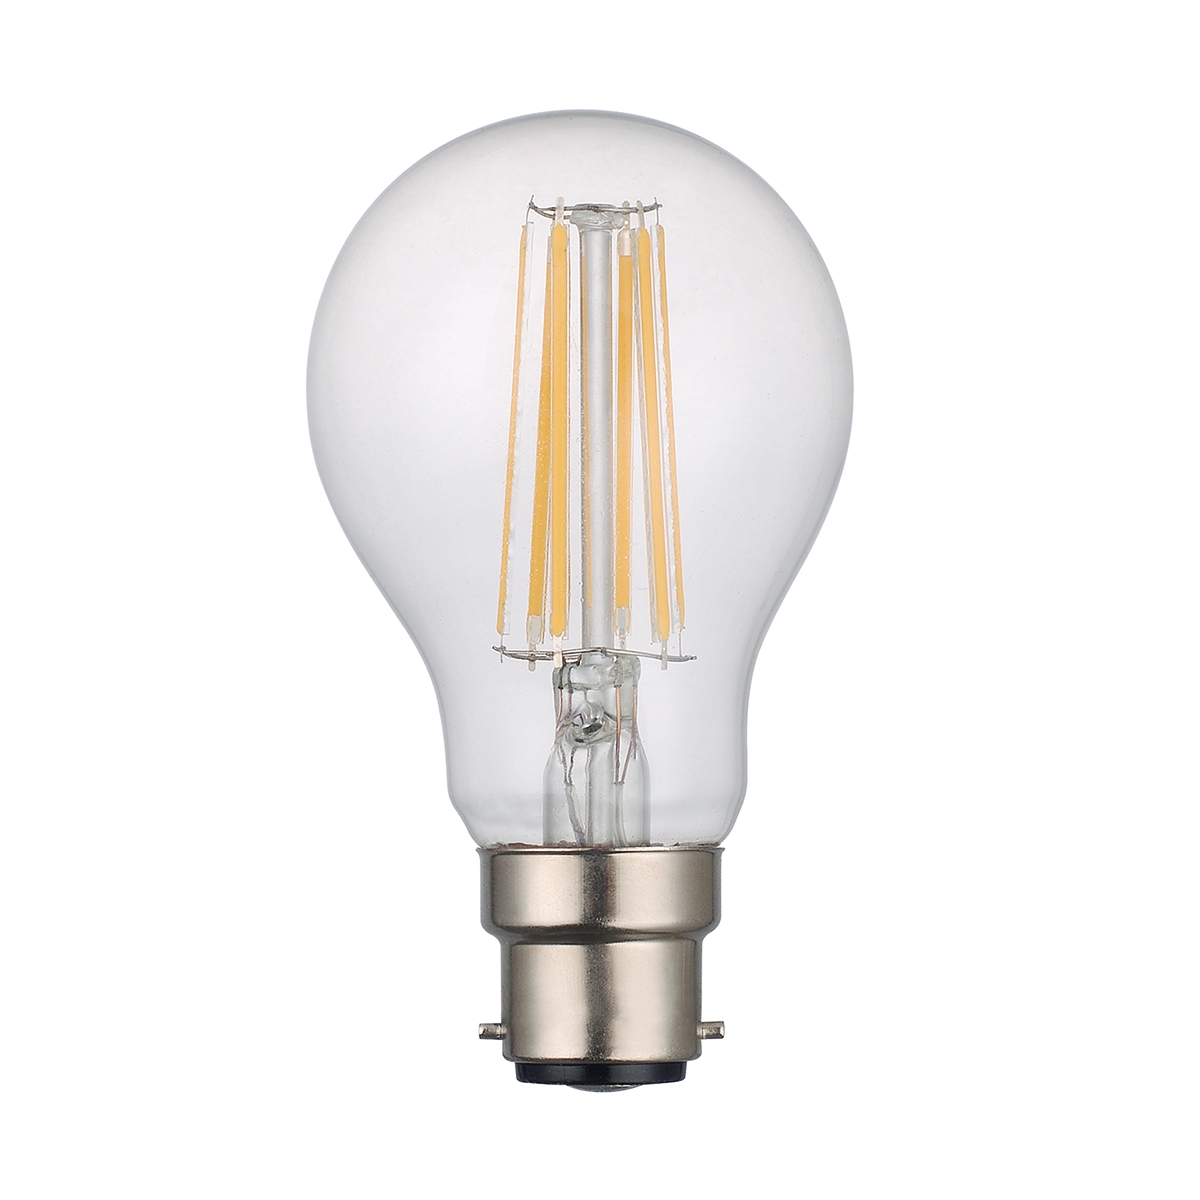 GLS Lamp 8w B22 LED Lamp Clear